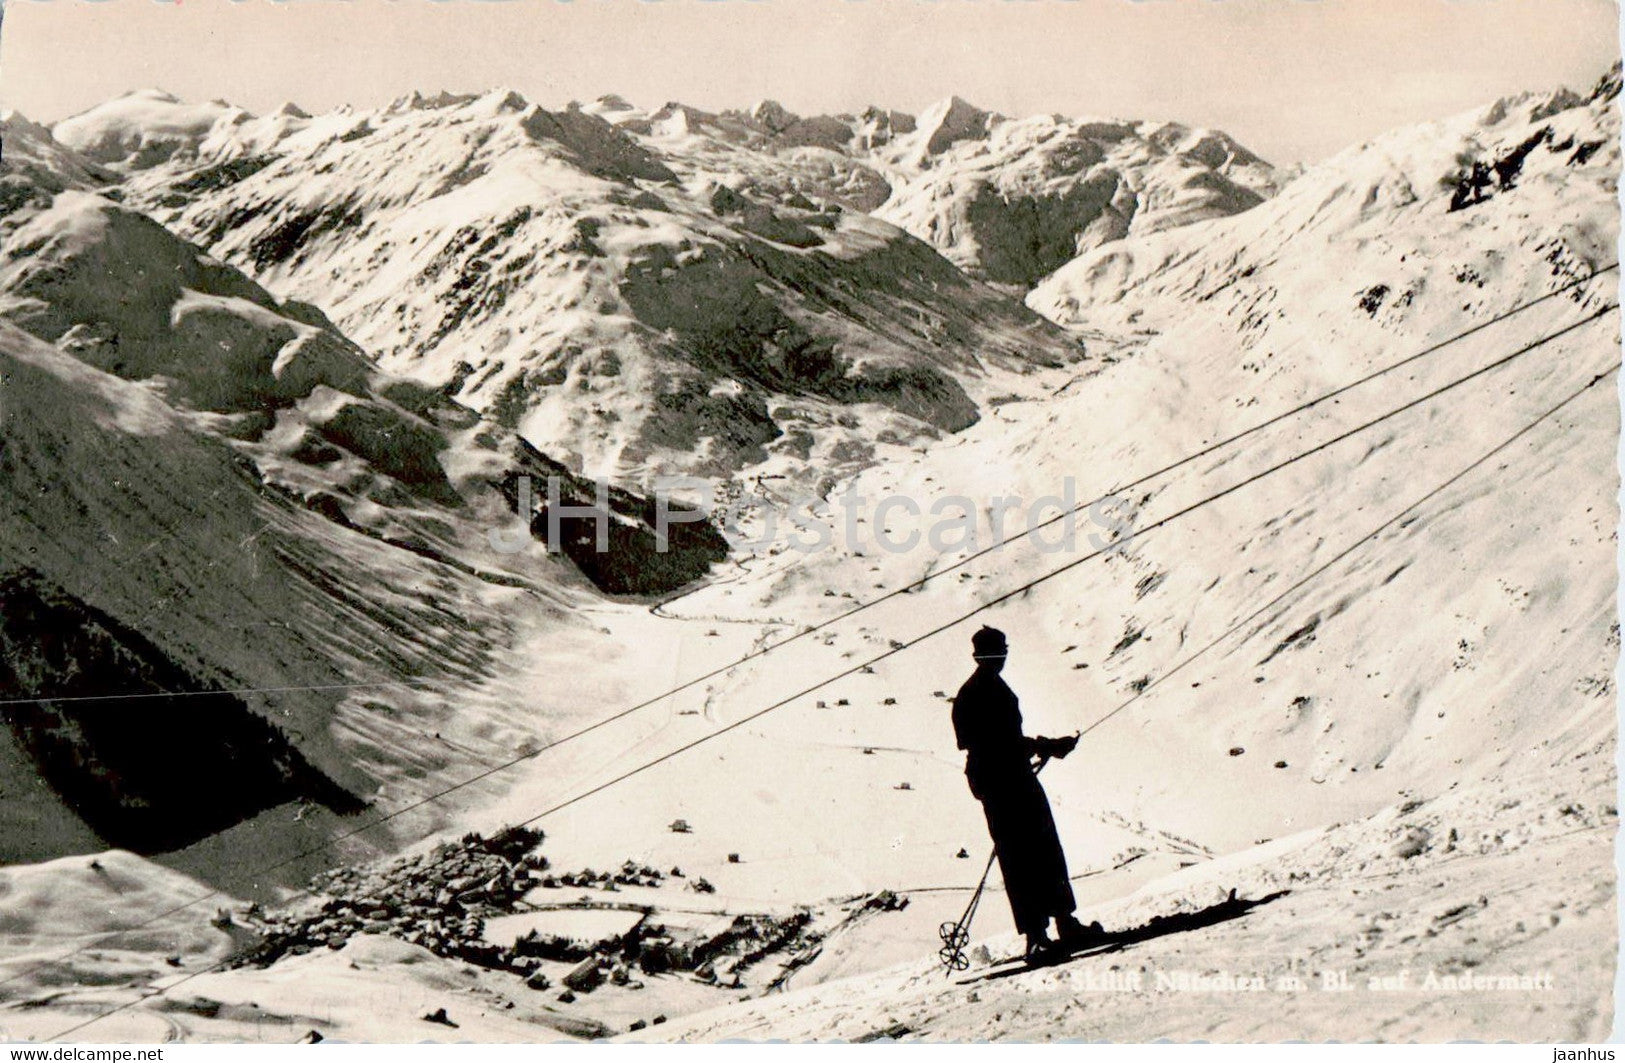 Skilift Natschen m Bl auf Andermatt - old postcard - Switzerland - unused - JH Postcards